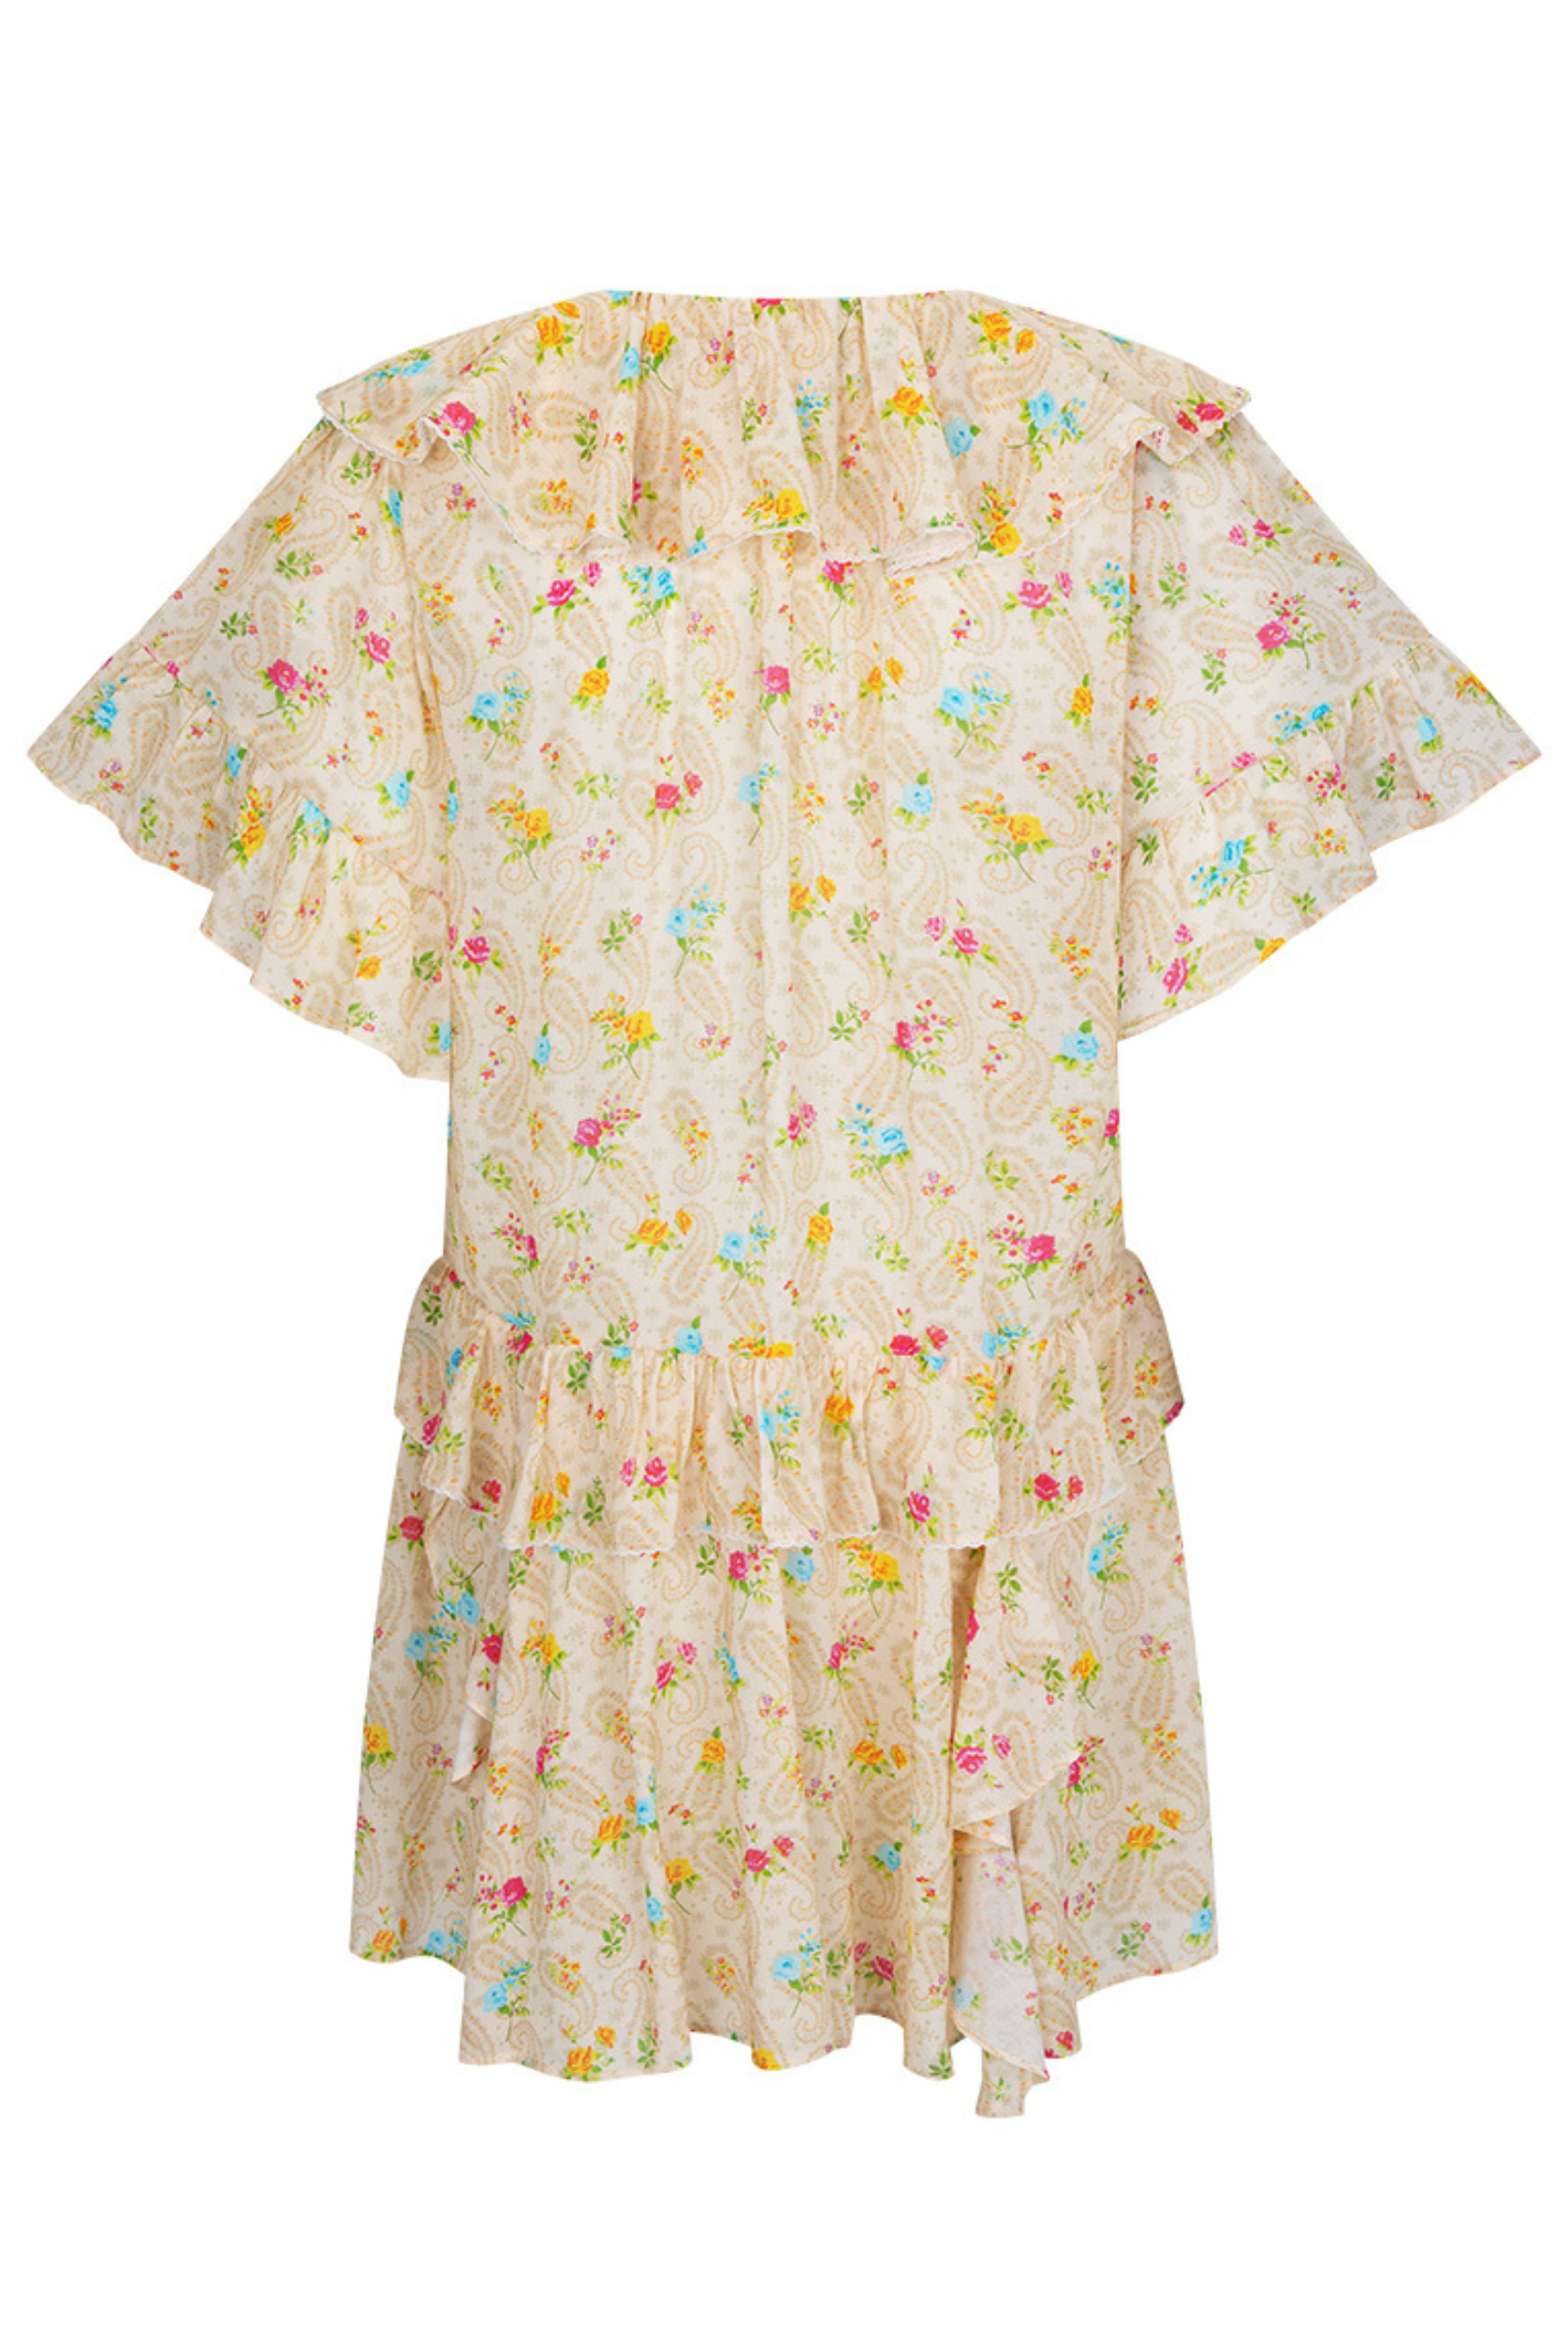 Fleur Flutter Sleeve Mini Dress by Spell in Macaroon